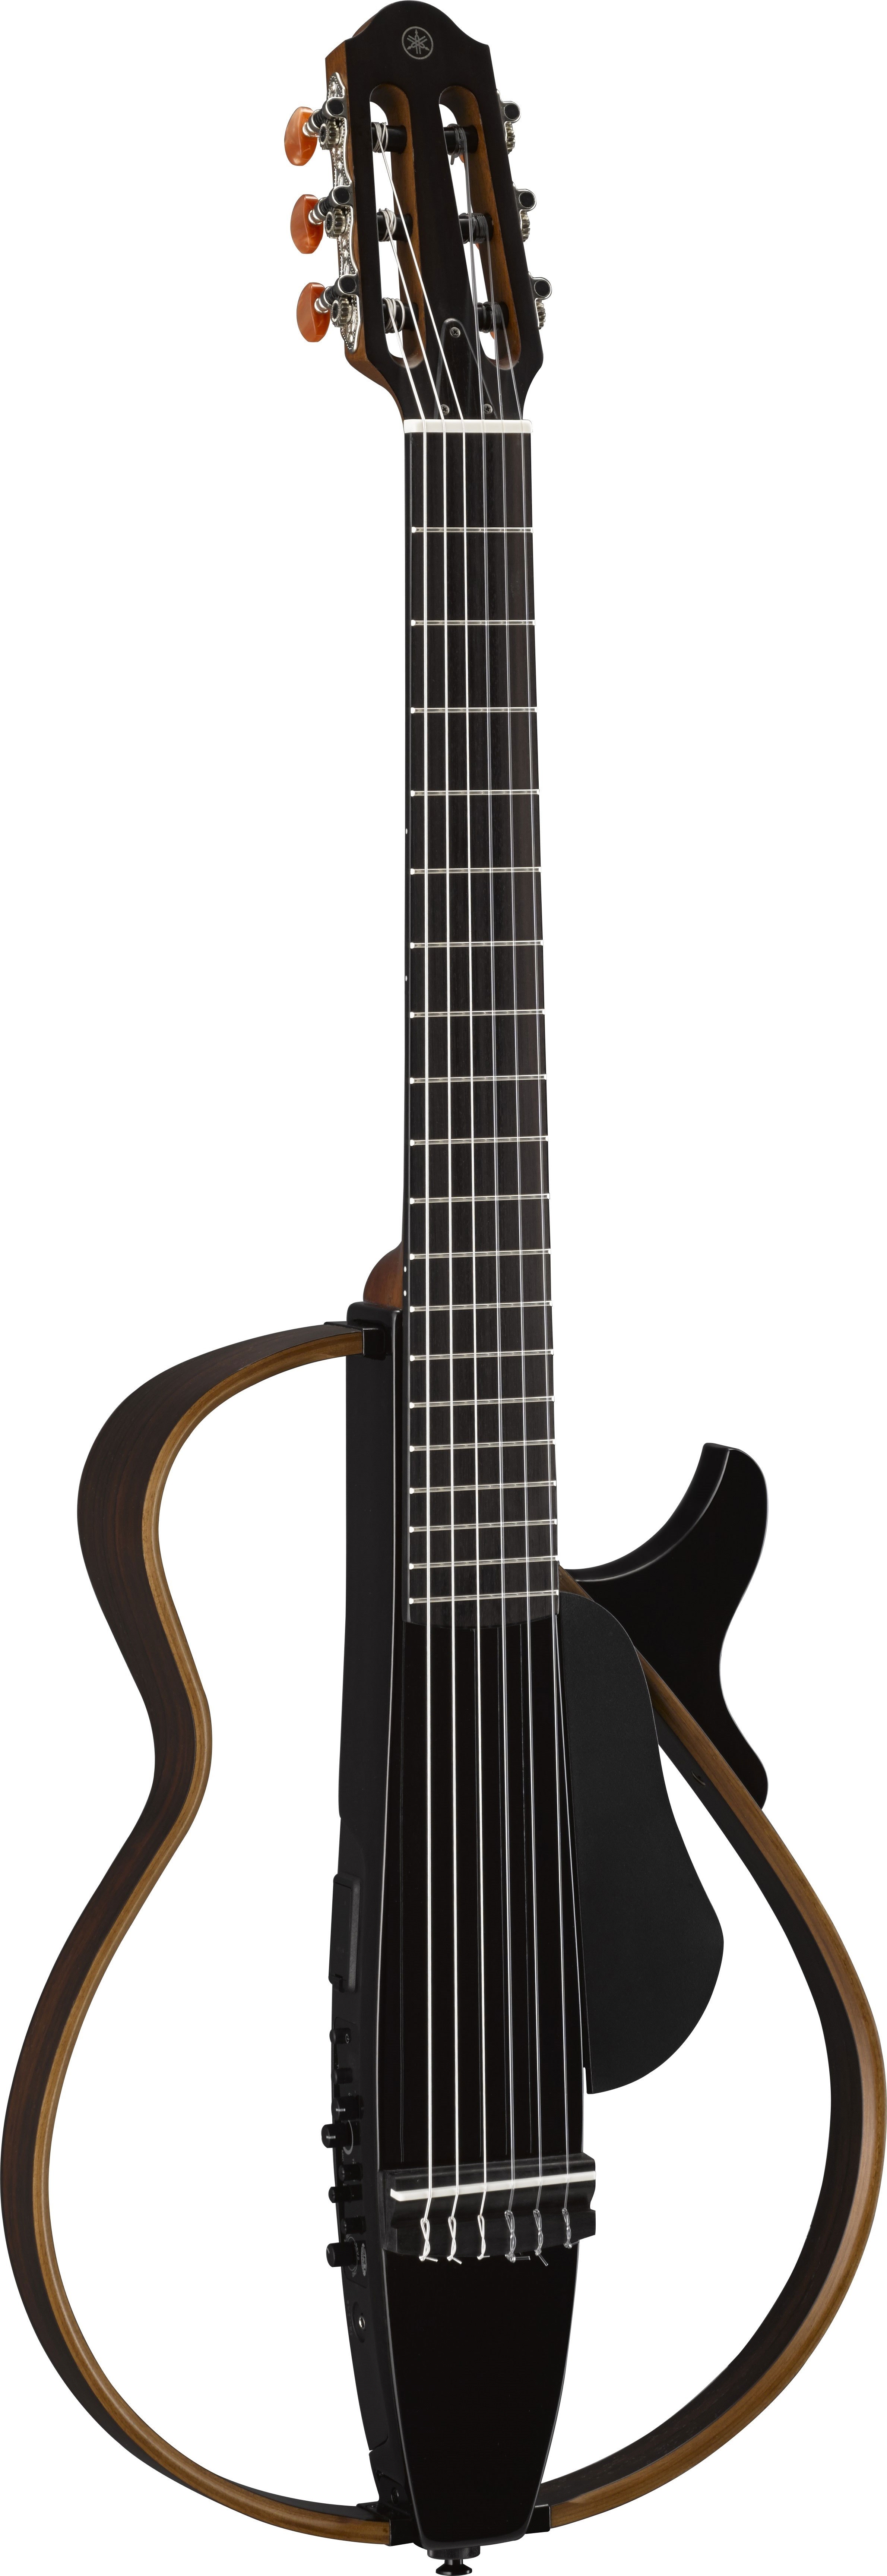 SLG200N Translucent Black Silent Nylon Guitar